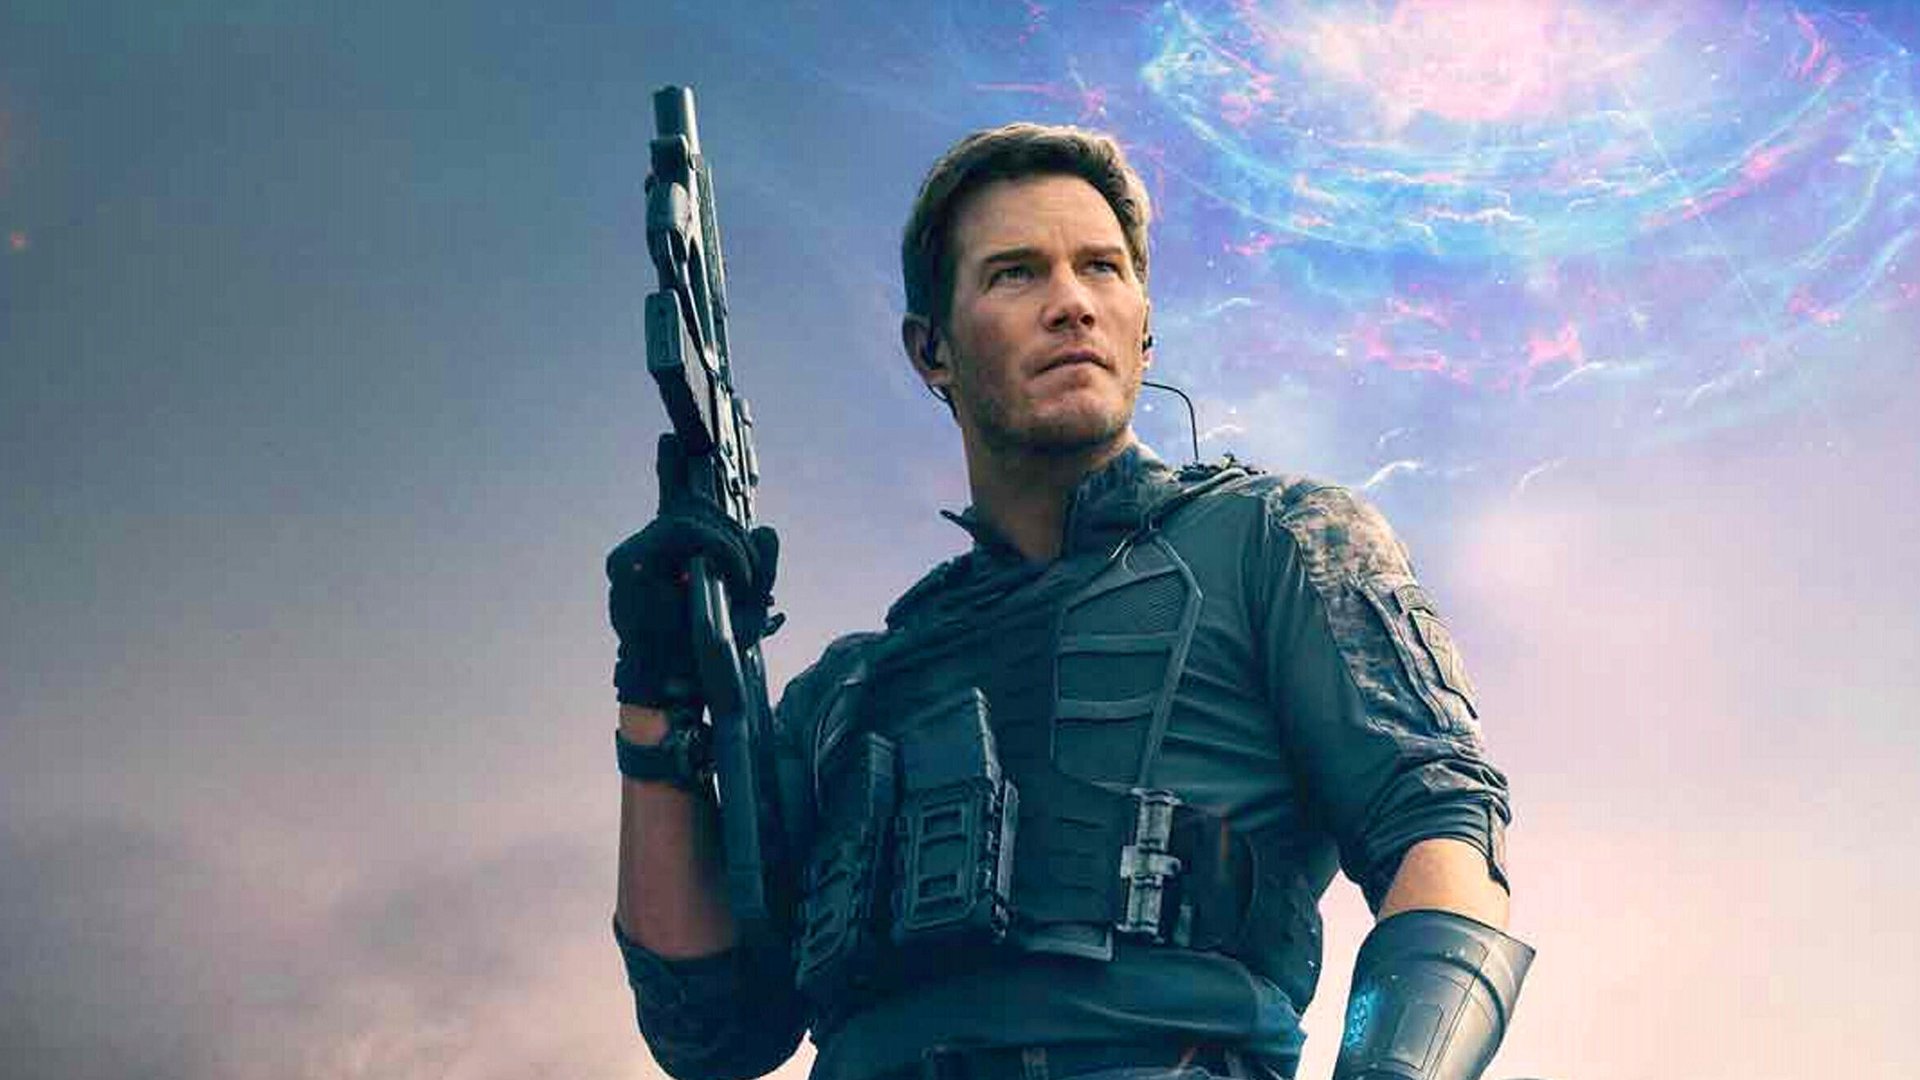 #„Wanted“-Regisseur & Chris Pratt drehen gigantischen Sci-Fi-Actionfilm für Amazon